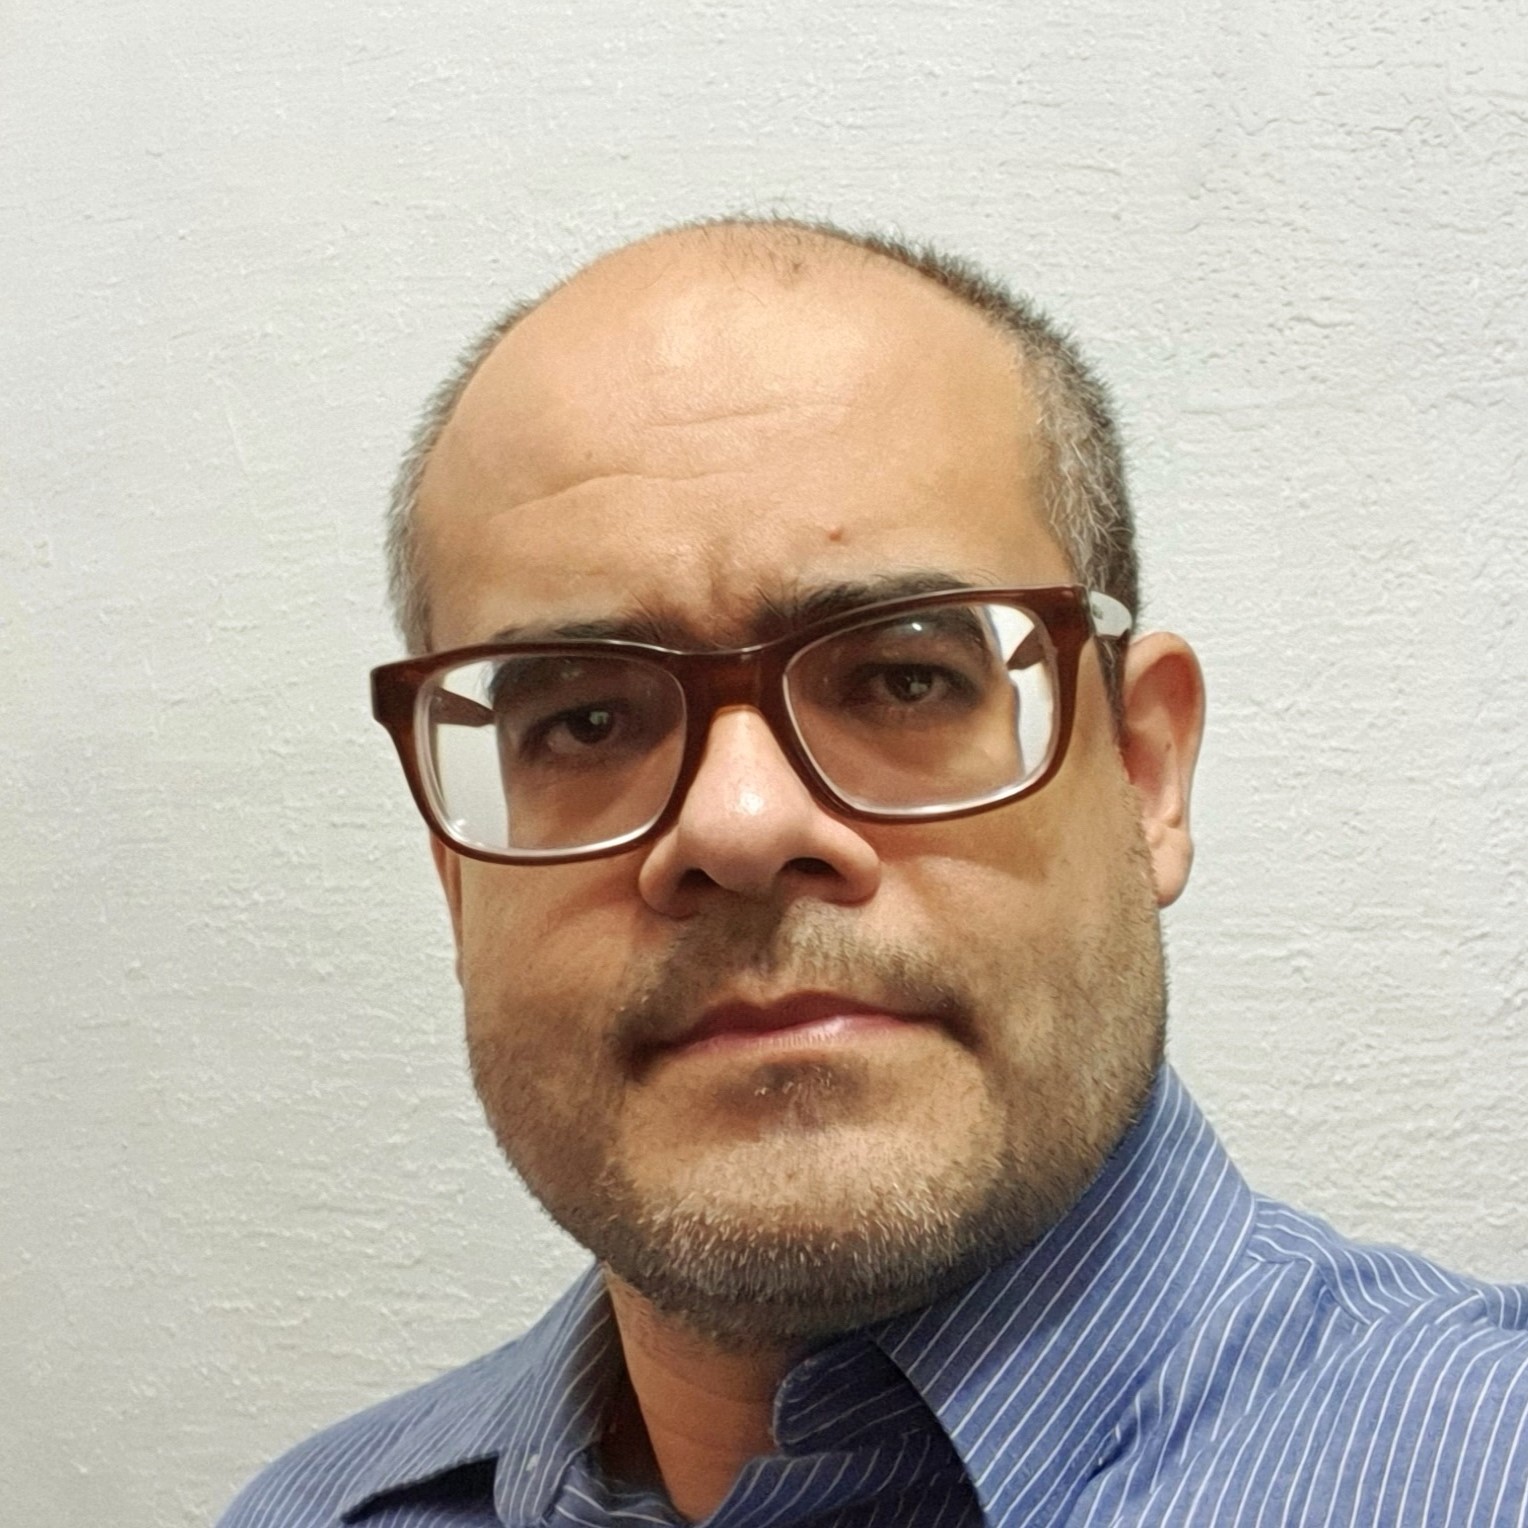 Rafael Queiroz de Souza